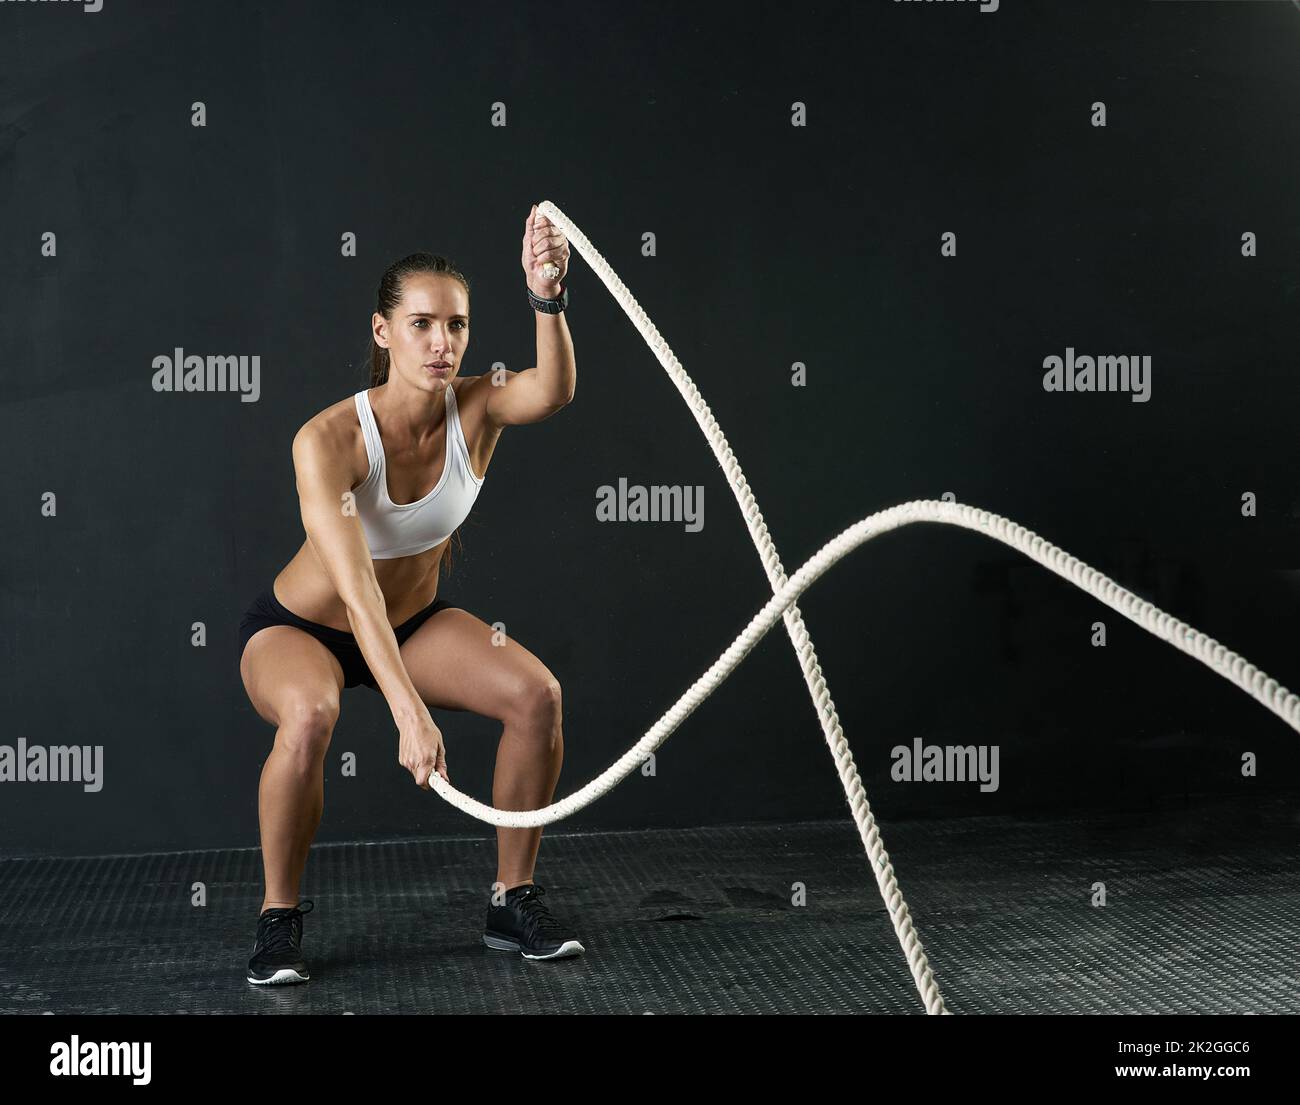 Queste corde sono davvero una battaglia. Studio girato di una giovane donna attraente che si sta allenando con corde pesanti su uno sfondo scuro. Foto Stock